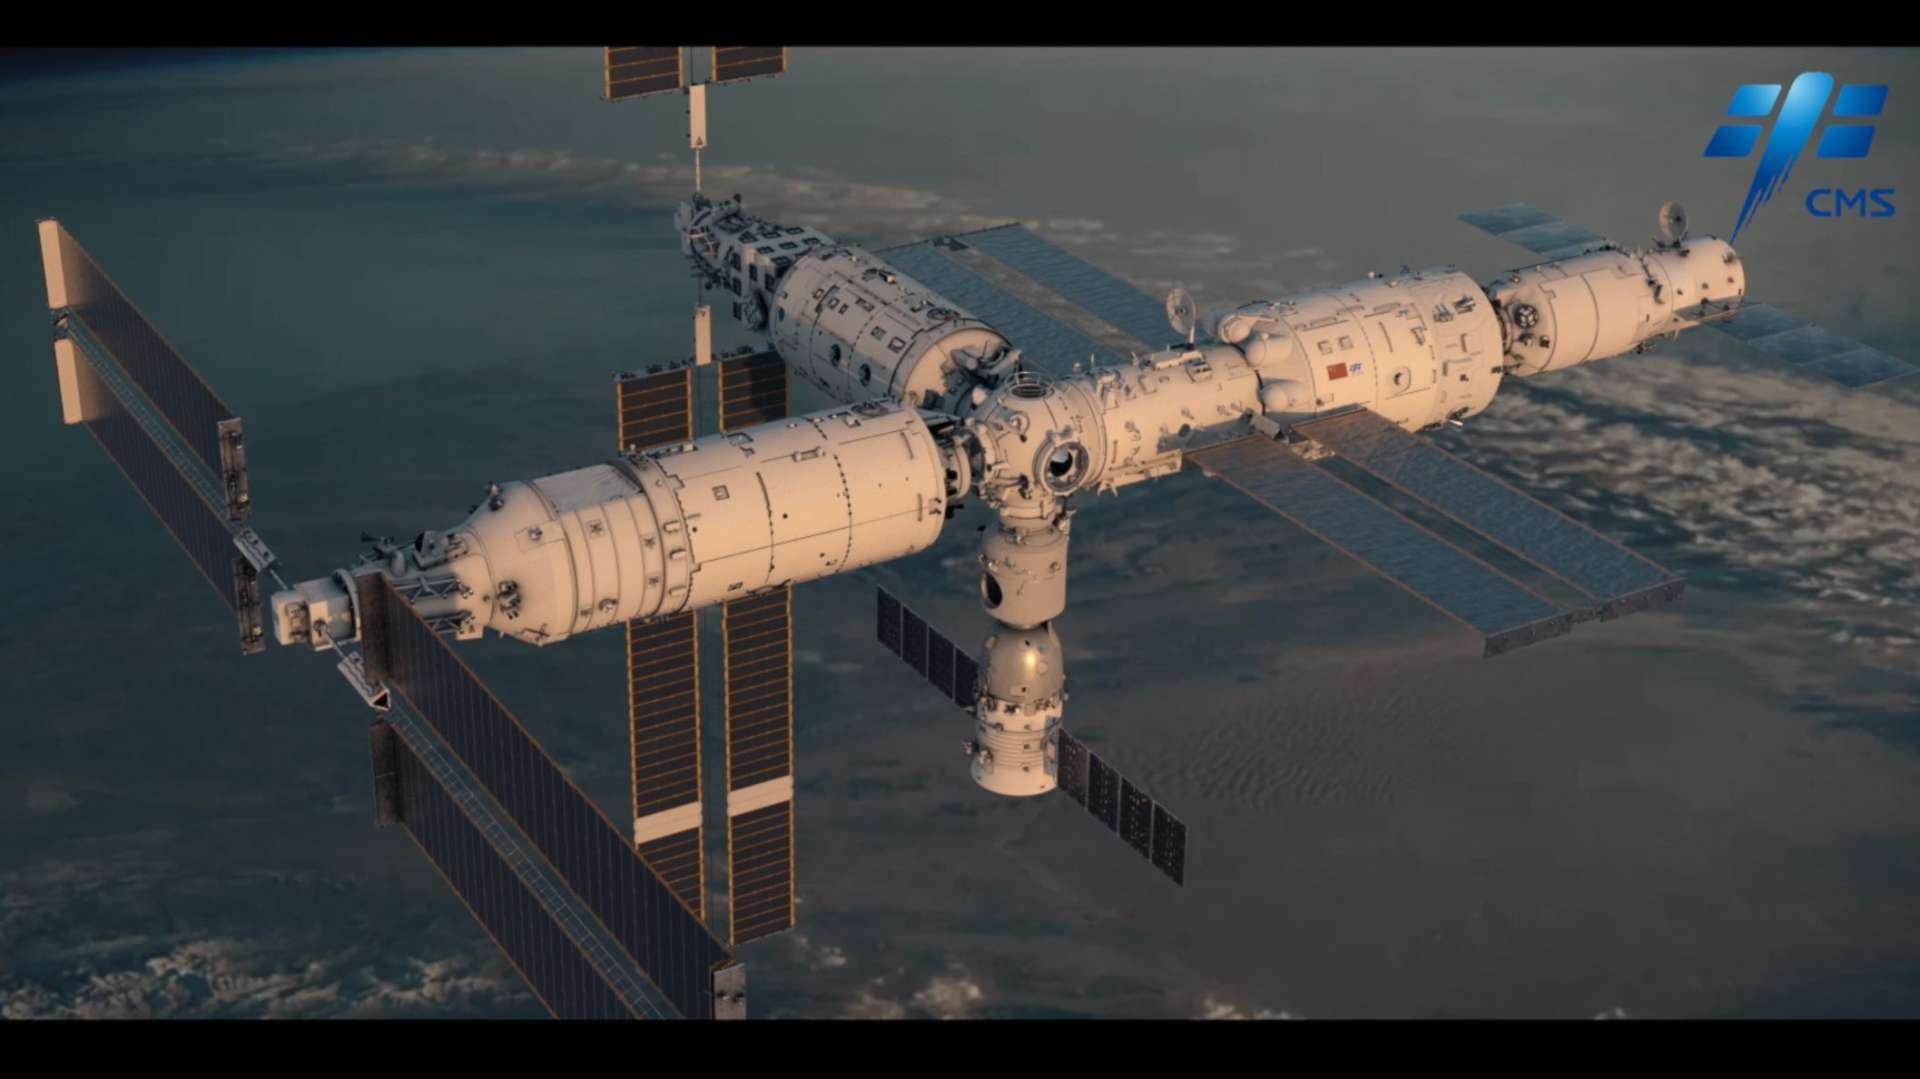 梦天实验舱发射任务 -中国航天 探月工程  宣传片 8k影片